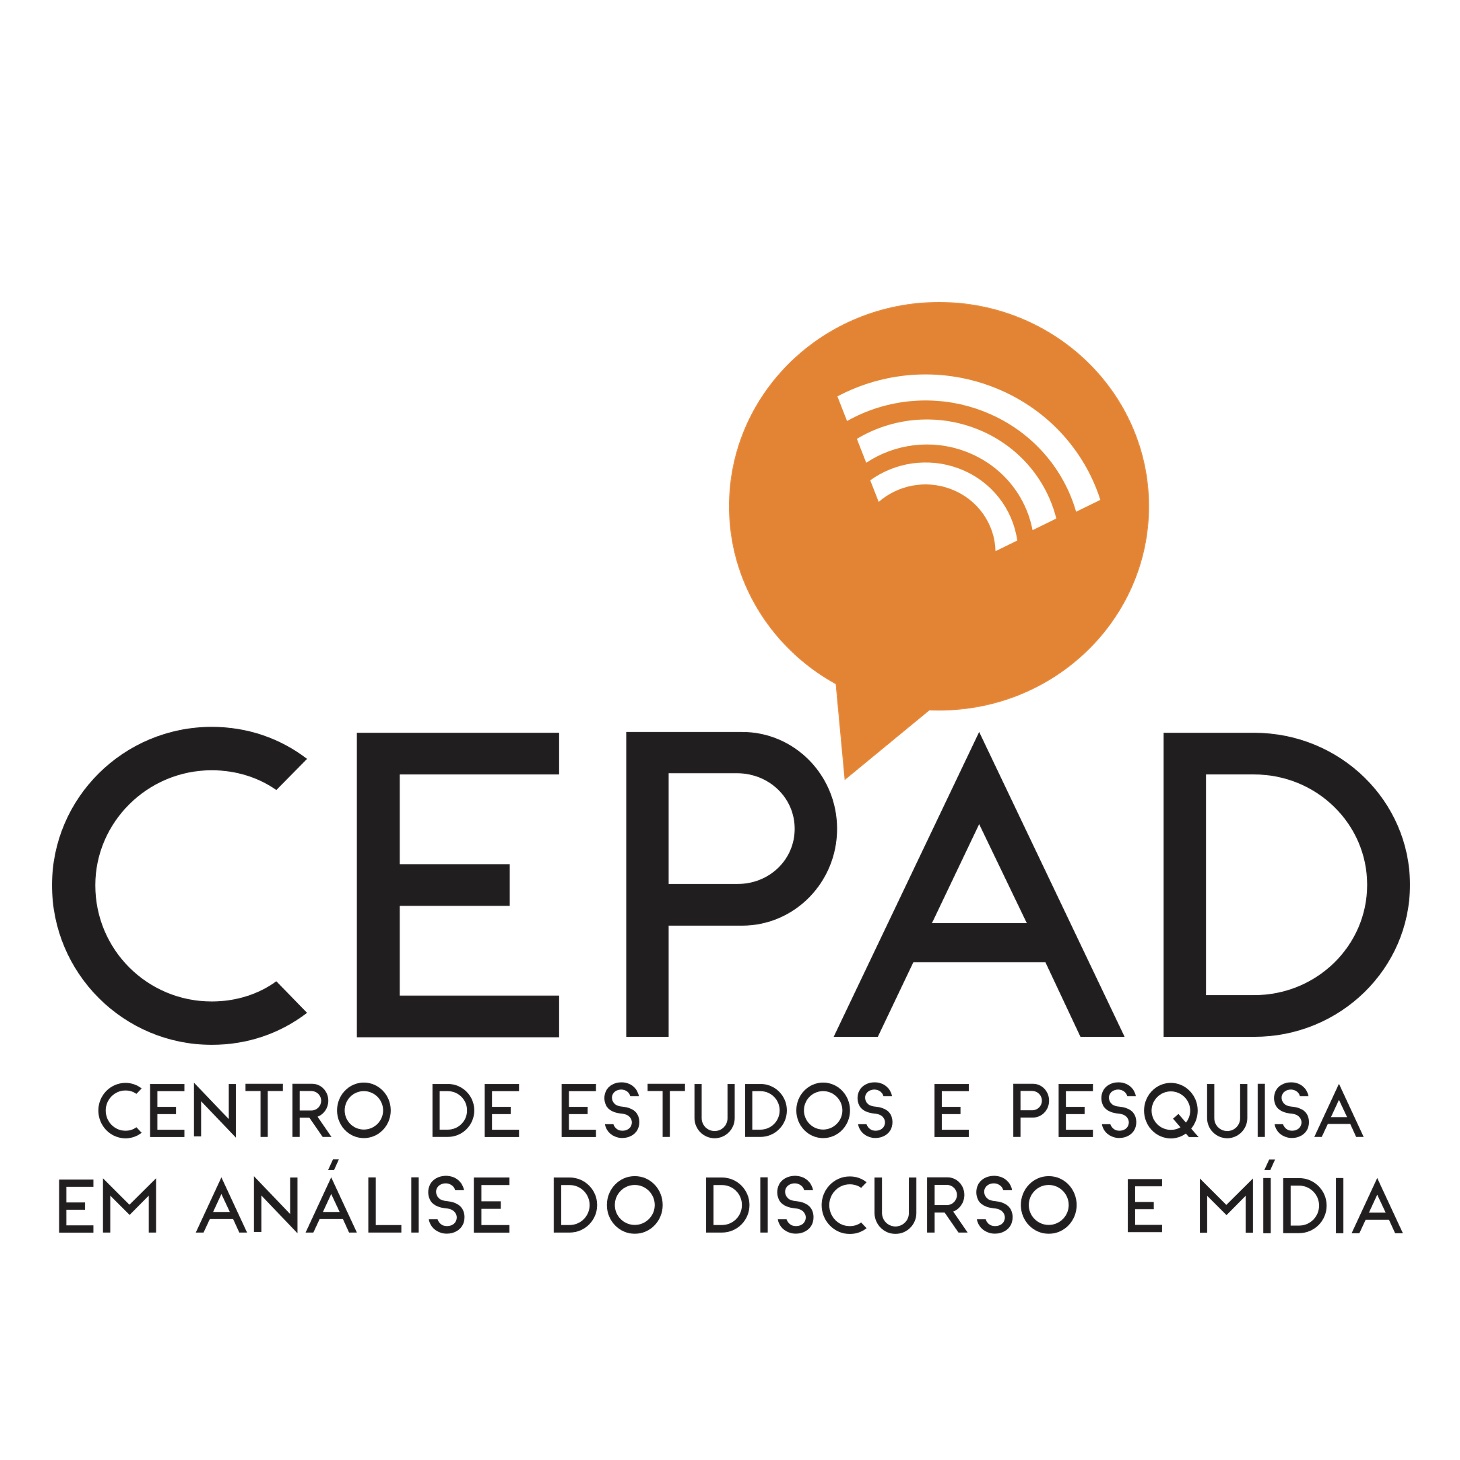 Sobre fundo branco, destaca-se a sigla CEPAD. Entre o P e o A, aparece um balão laranja, dentro do qual estão três curvas brancas em paralelo. Abaixo, lê-se o significado da sigla: Centro de Estudos e Pesquisa em Análise de Discurso e Mídia.